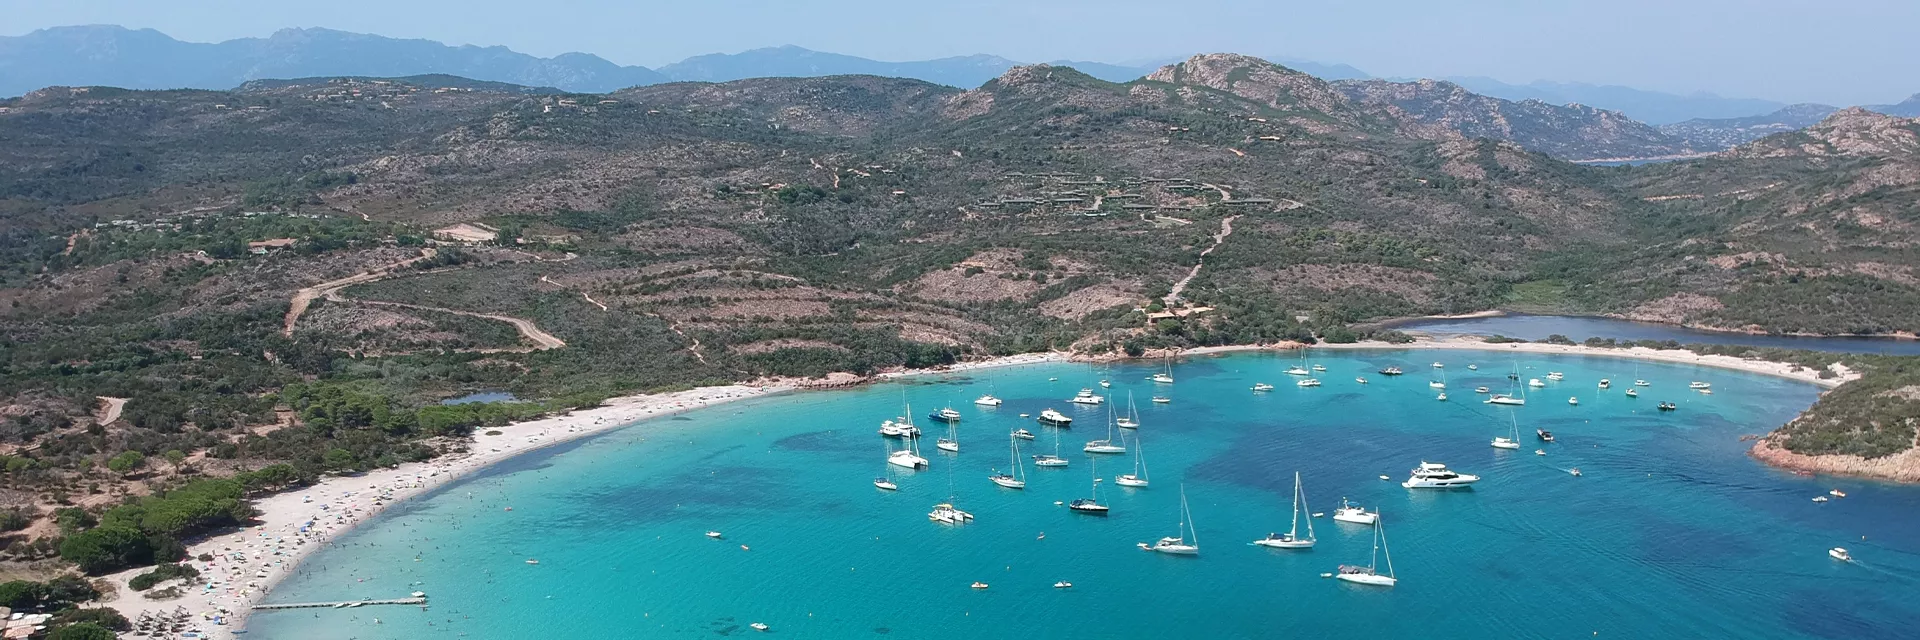 Location de vacances en Corse du sud !